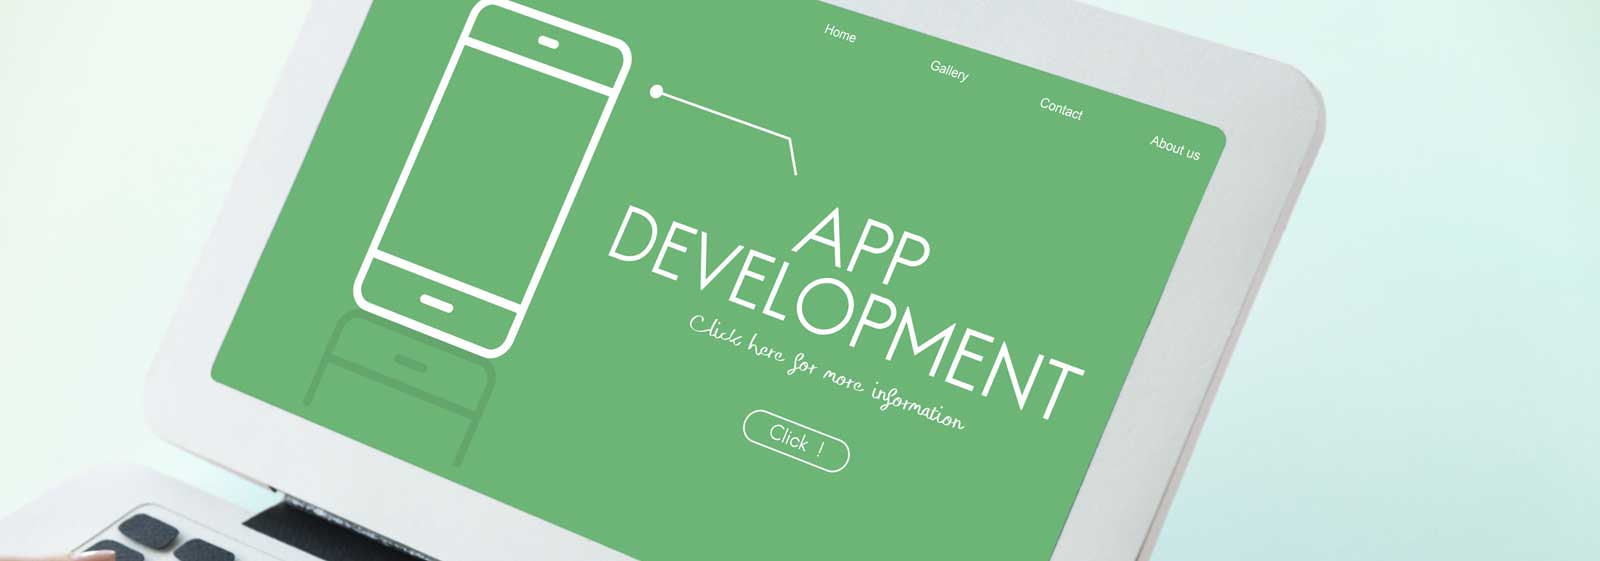 Native App Development Company in Mumbai